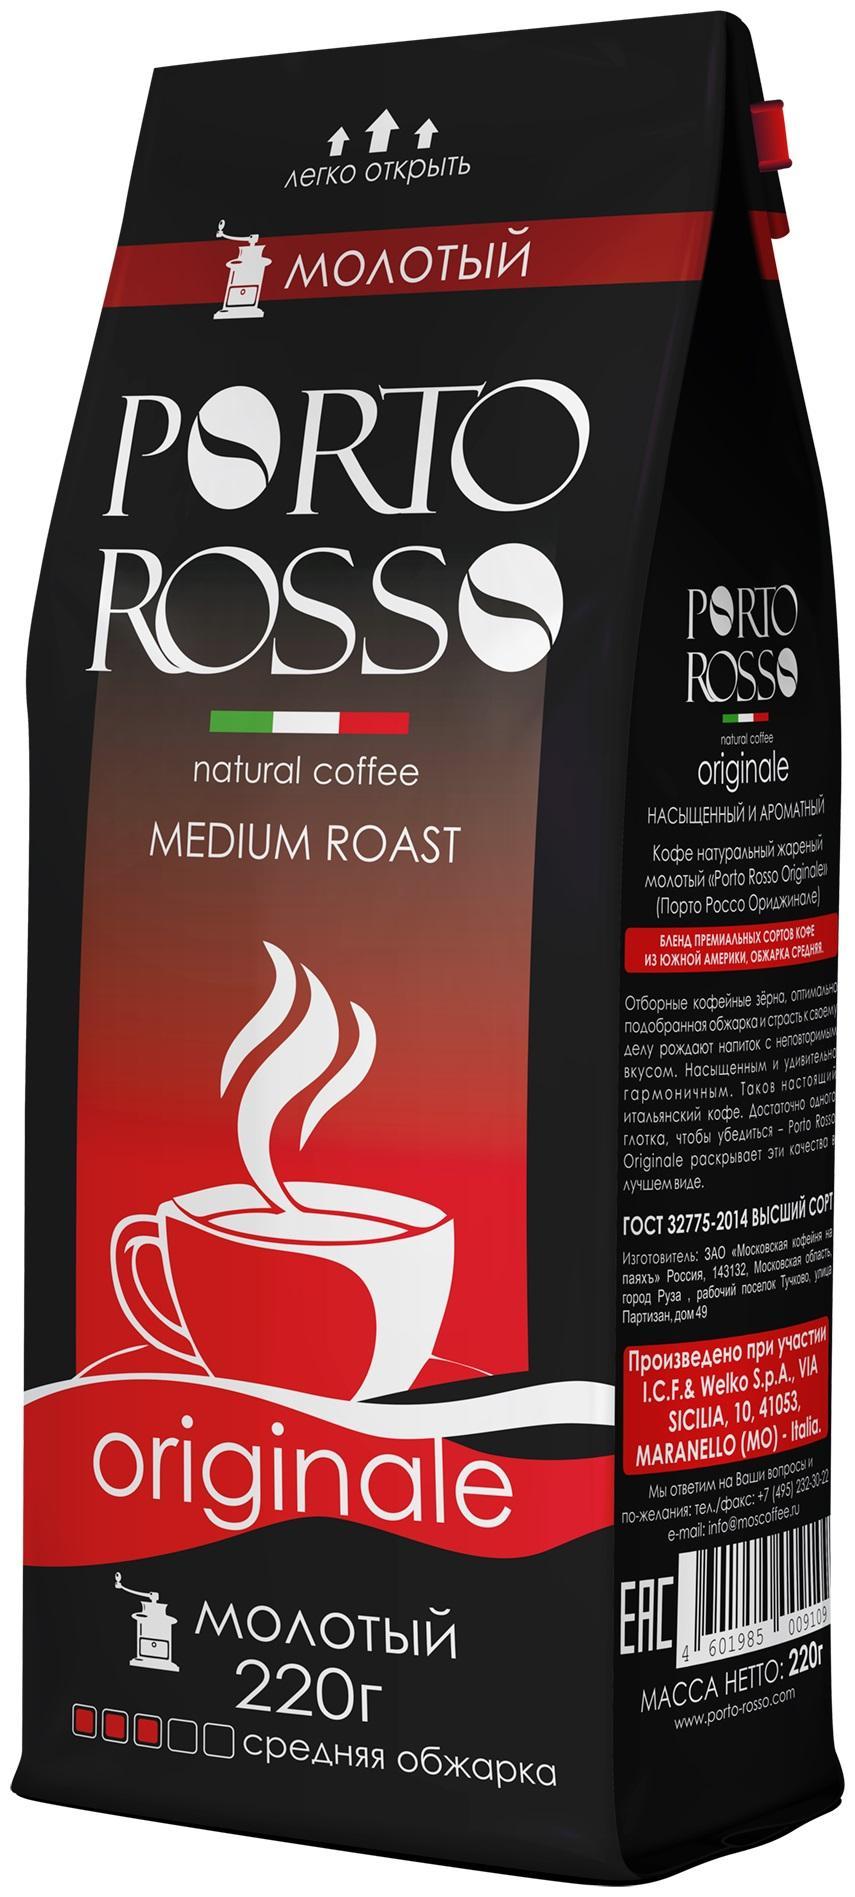 Кофе молотый Porto Rosso Original, 220 гр., дой-пак